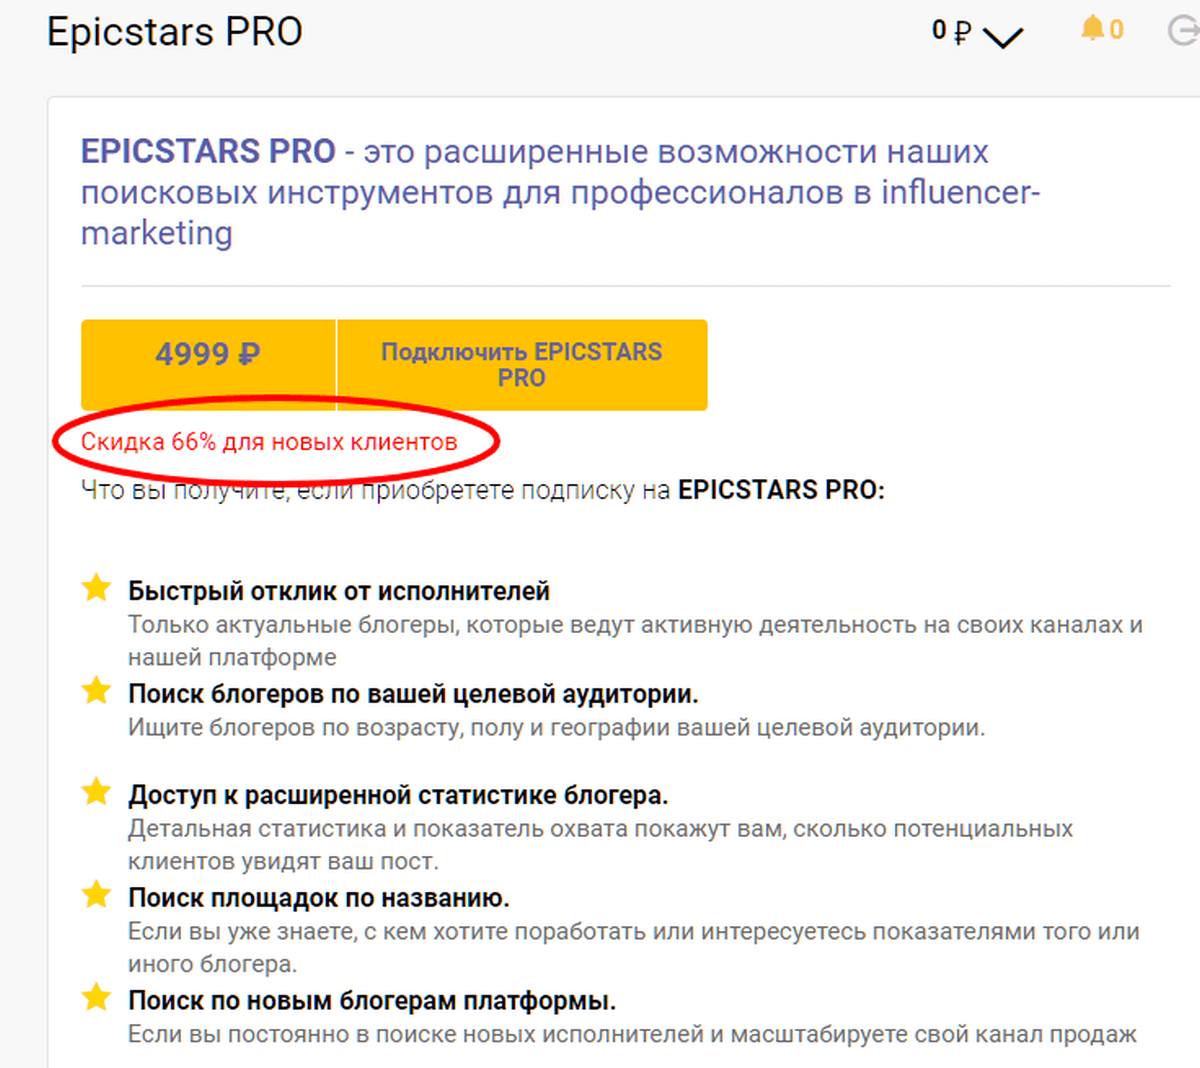 Есть дополнительная услуга Epicstars Plus. Стоит она 7 000 рублей – за эти деньги сервис предлагает взять на себя основные заботы рекламодателя.